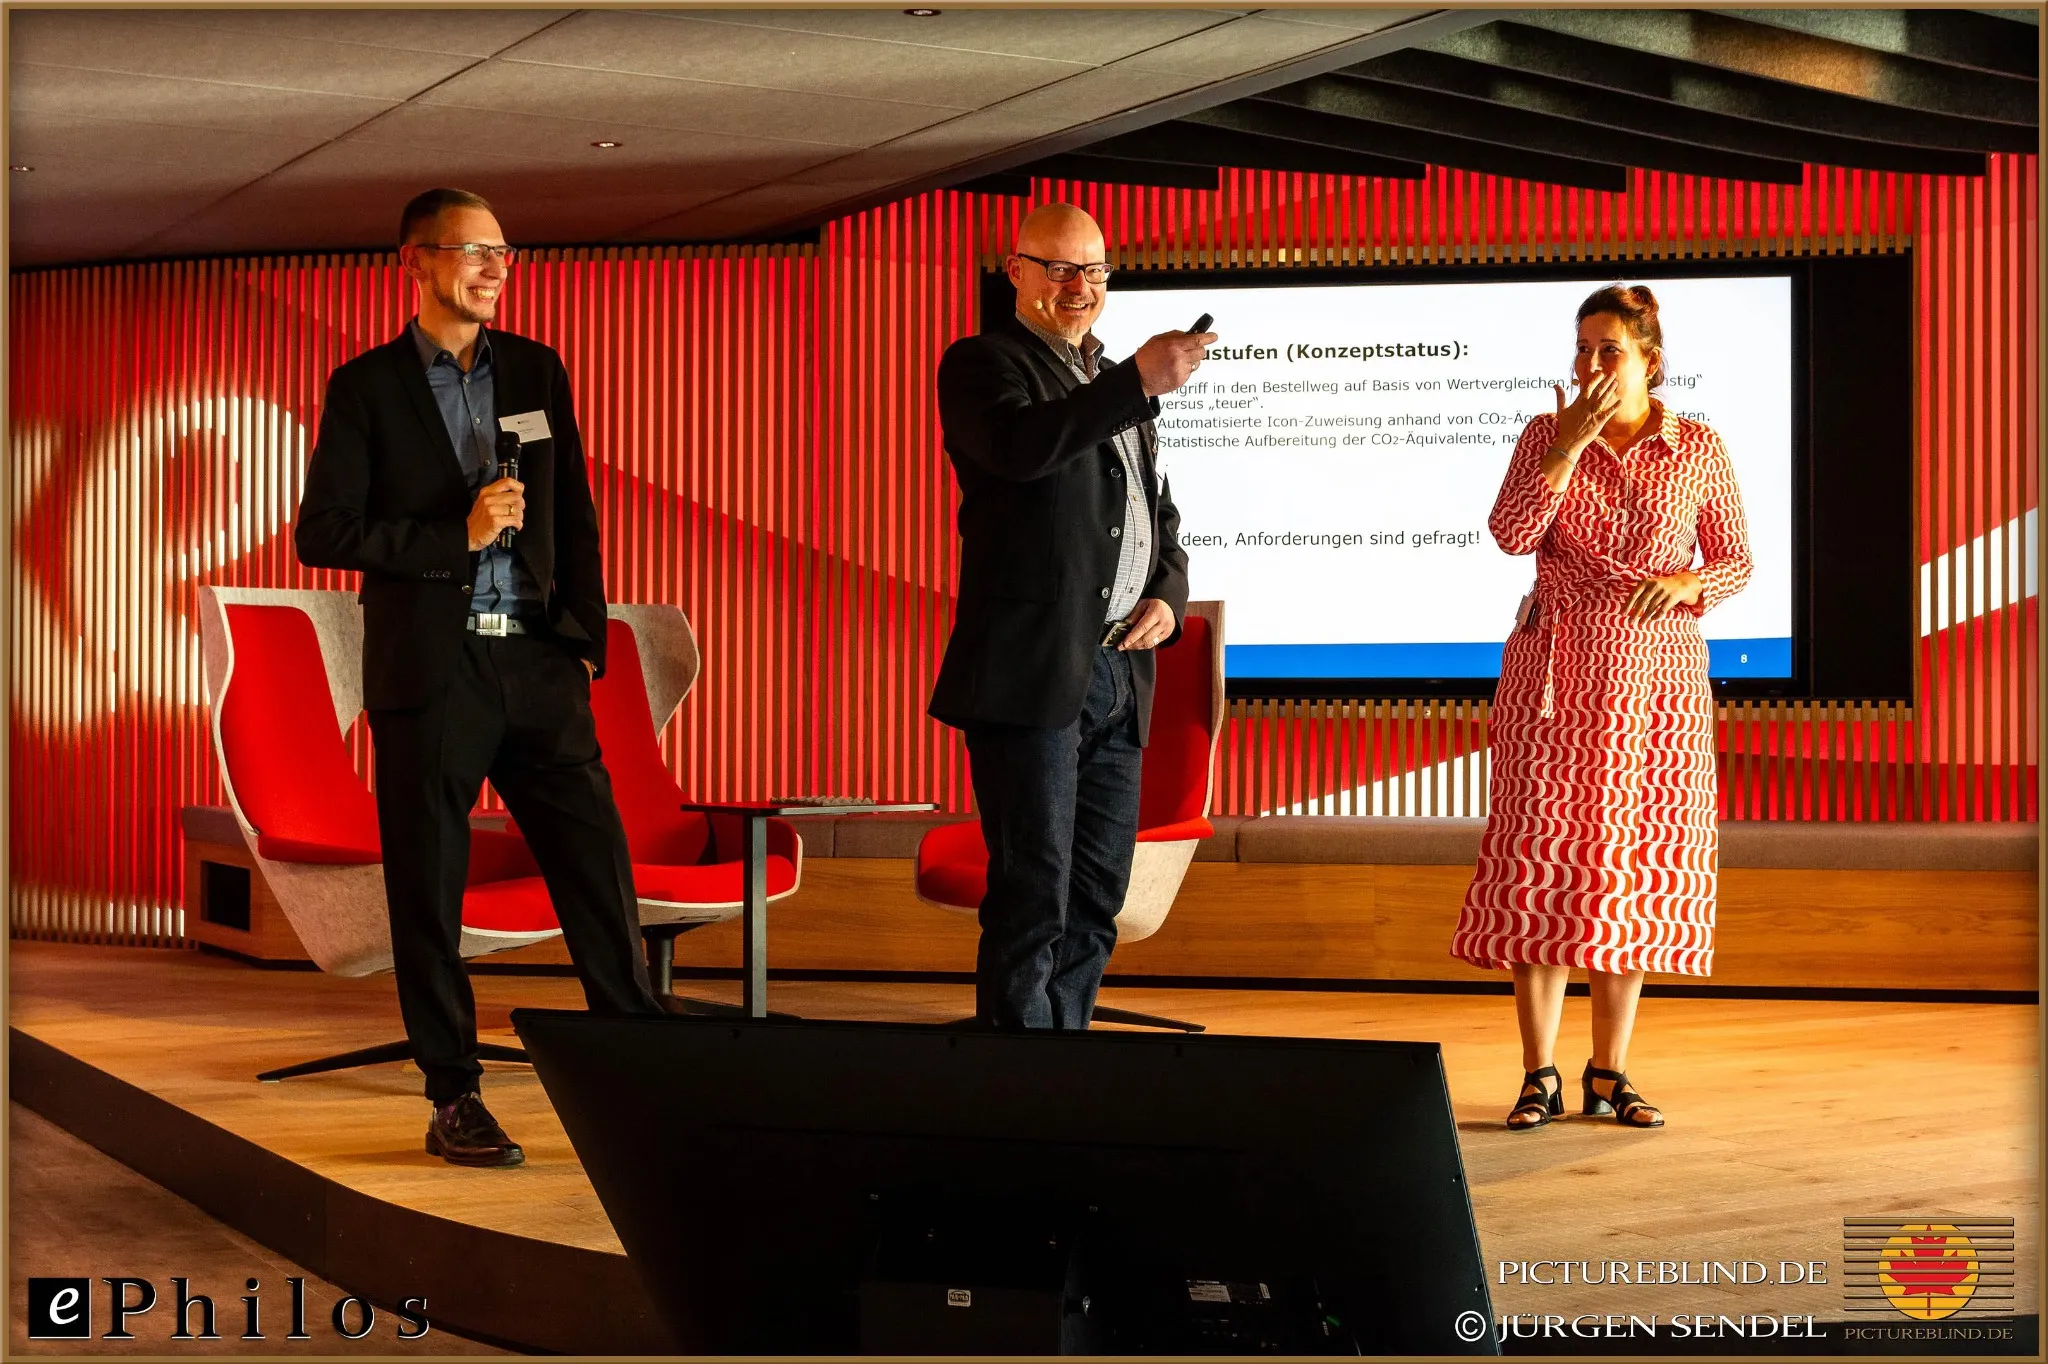 Drei Referenten auf der Bühne bei einer Präsentation, beleuchtet von warmem Licht, vor einer großen Leinwand